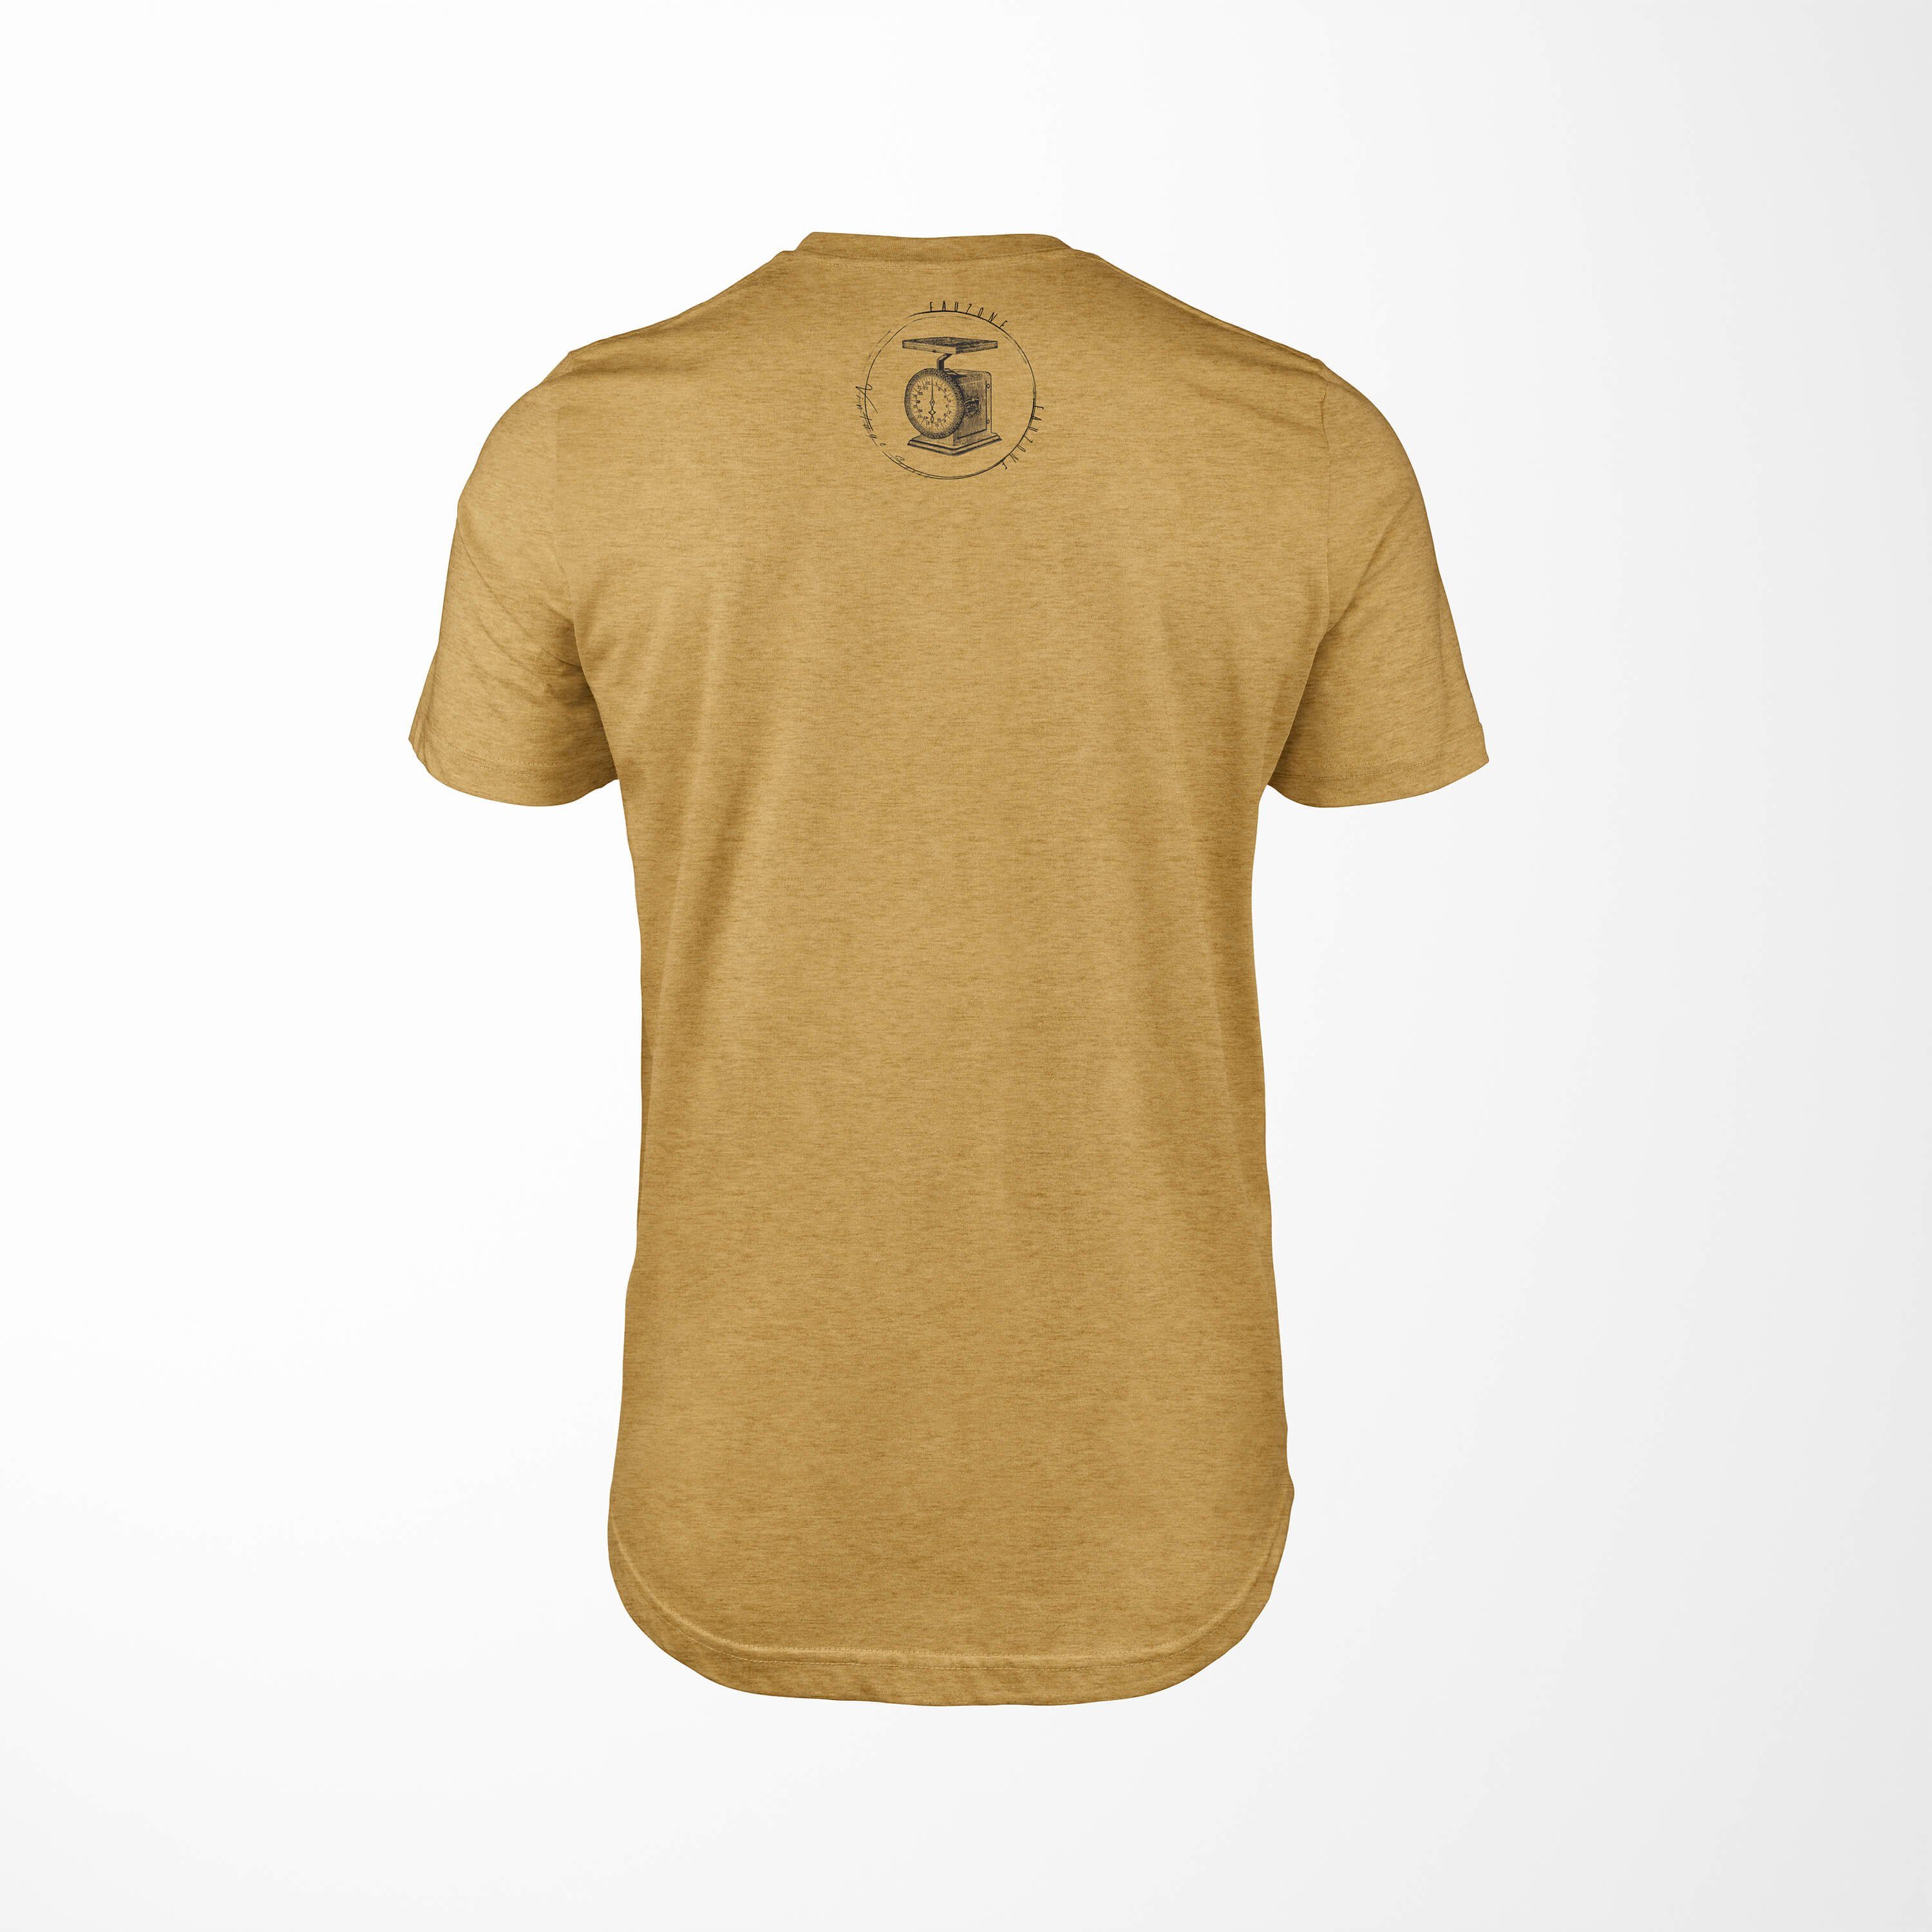 Herren Gold Vintage Küchenwaage Antique Sinus Art T-Shirt T-Shirt